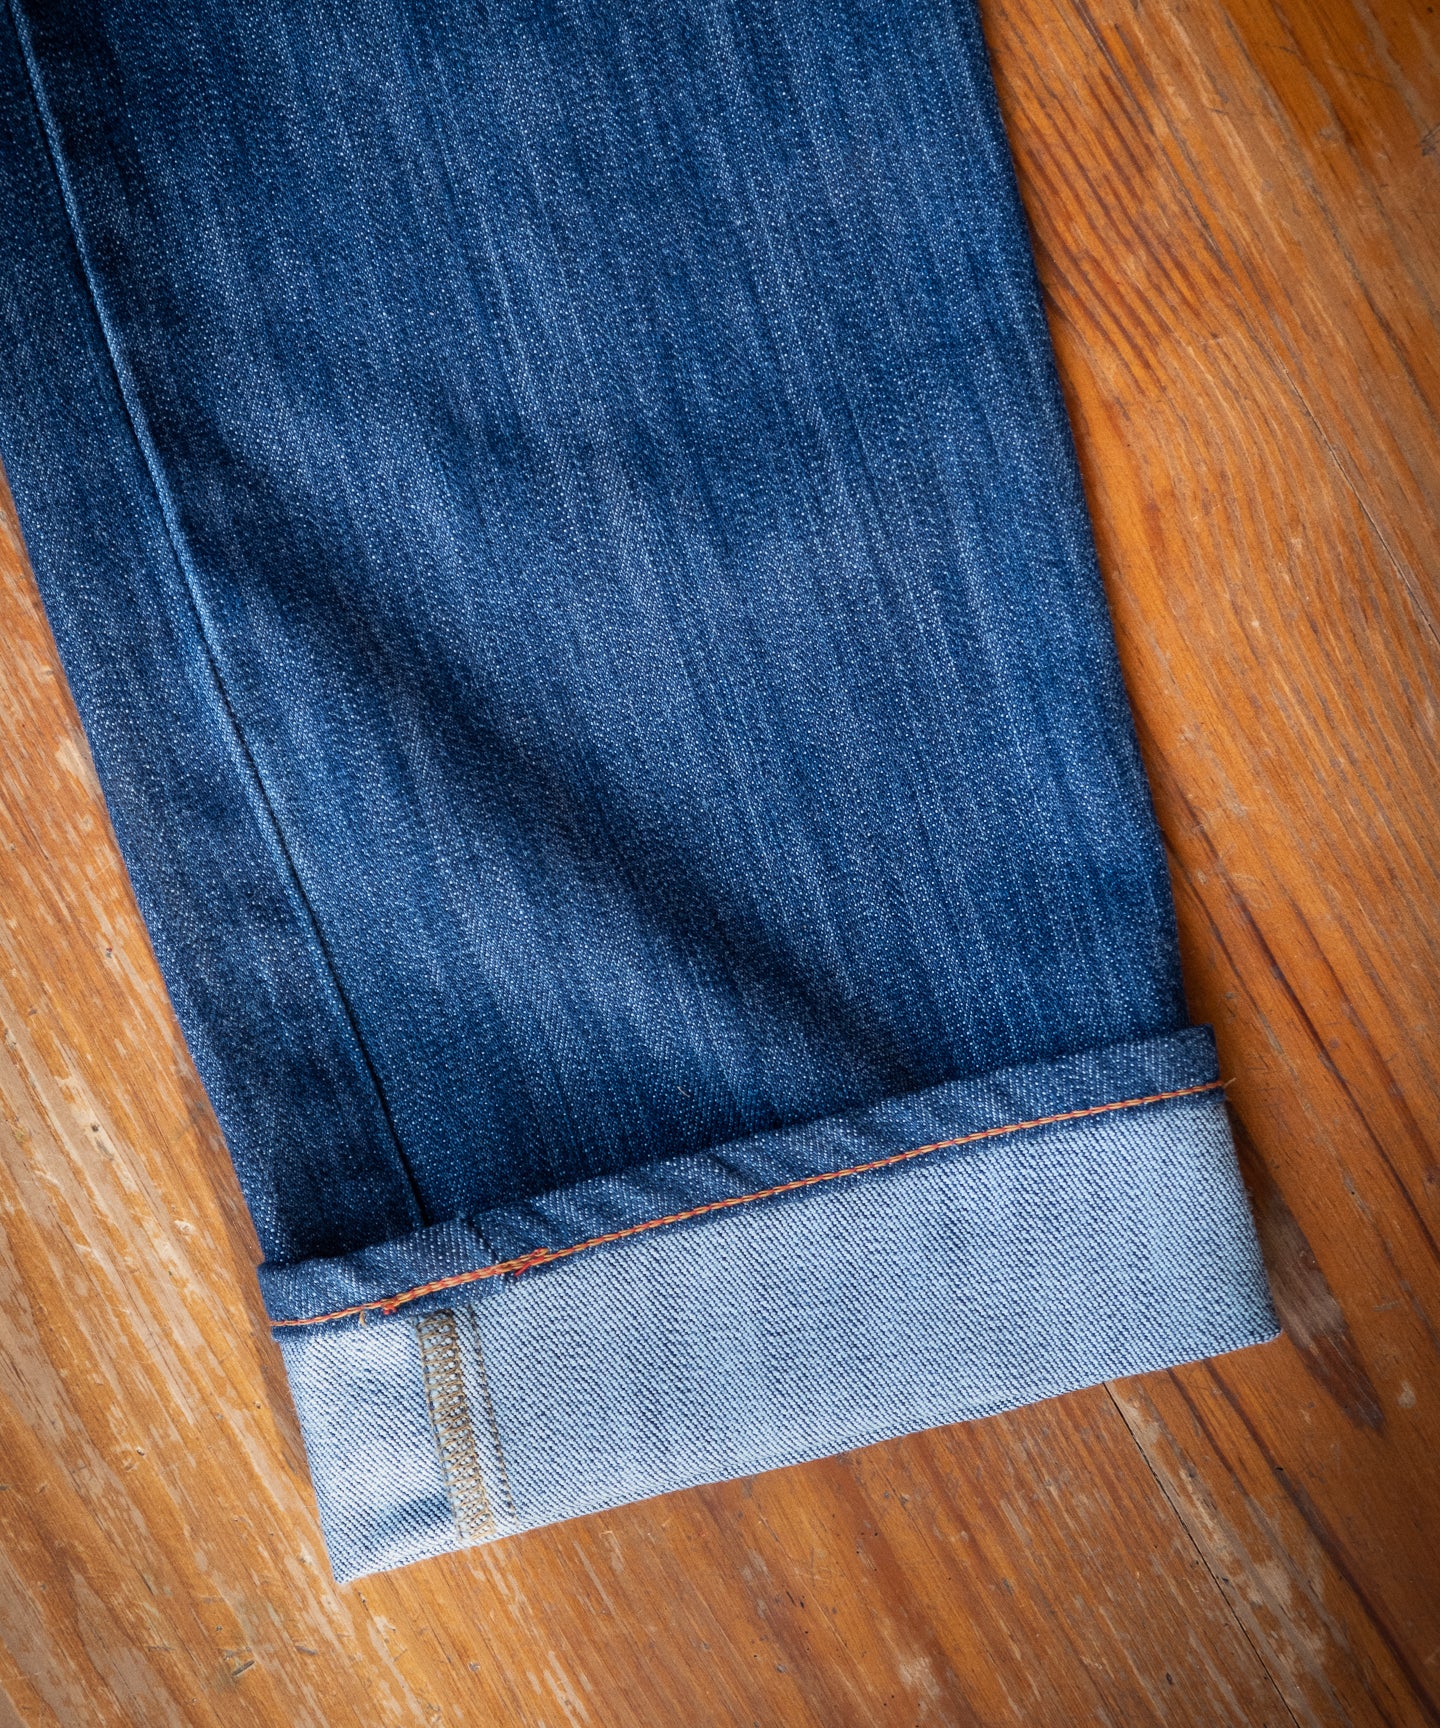 Washed Denim 5 Pocket Jean